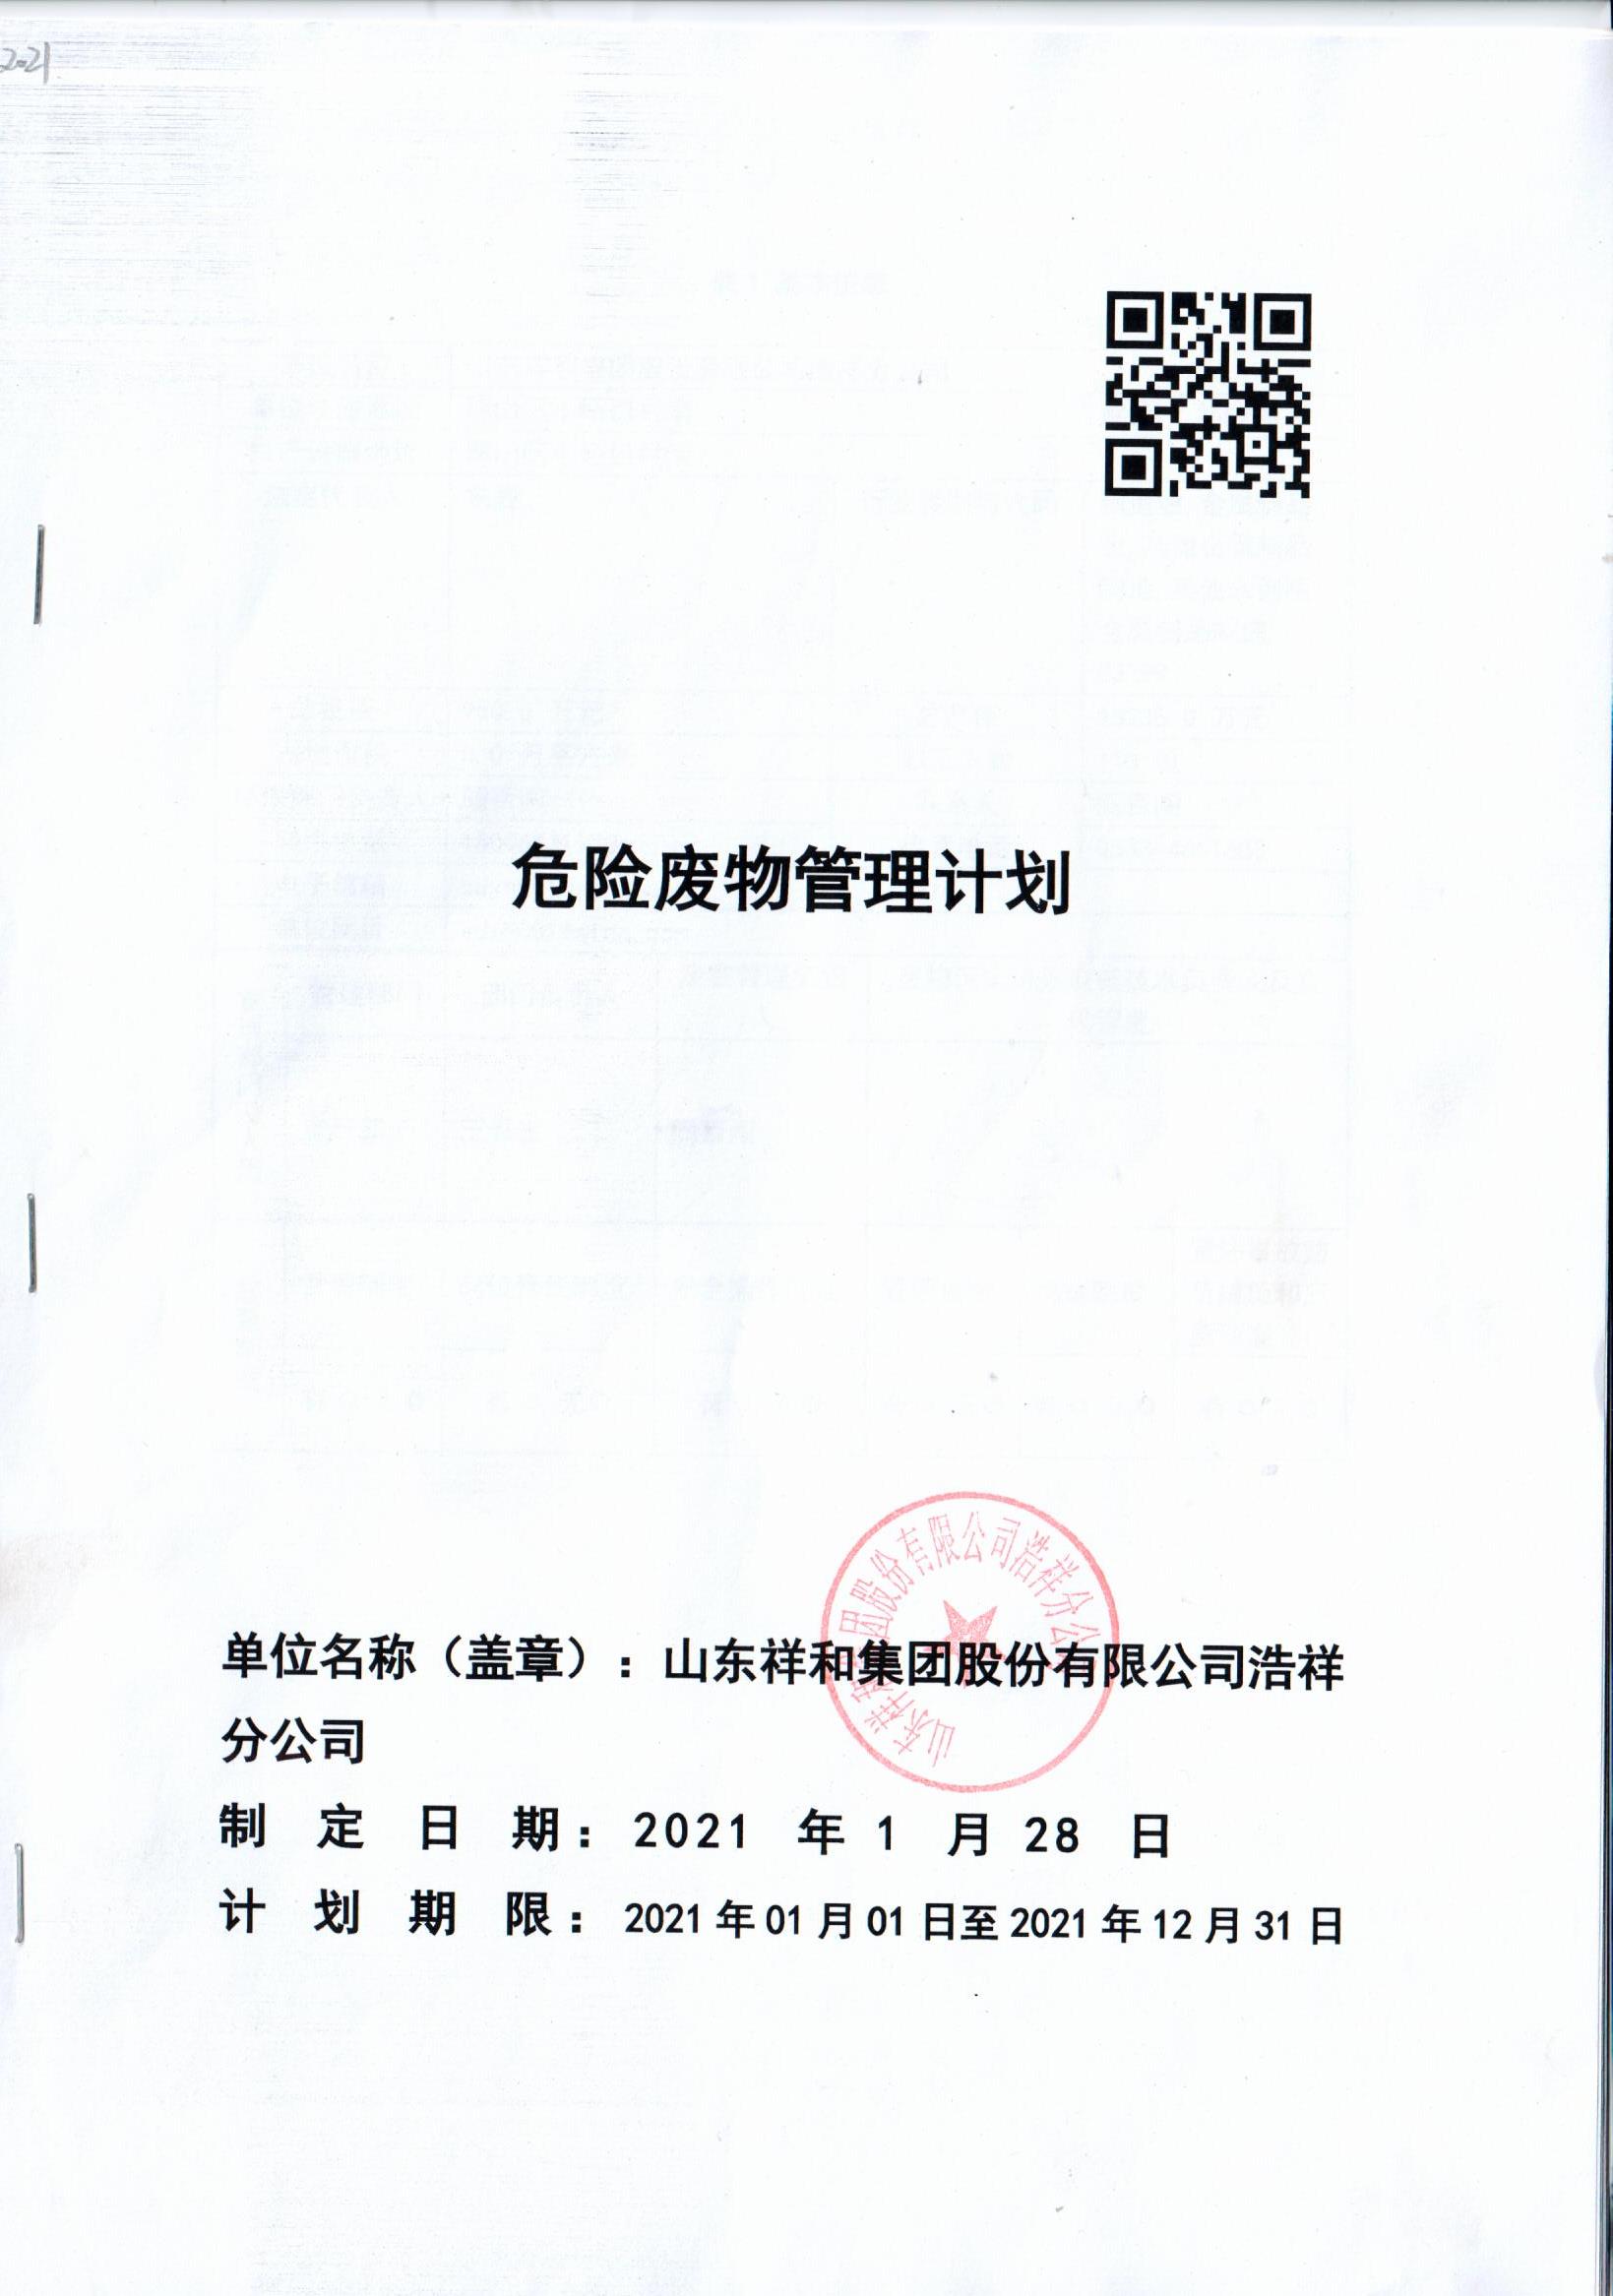 皇冠crown官网(中国)有限公司官网浩祥分公司2021年度危险废物管理信息公开